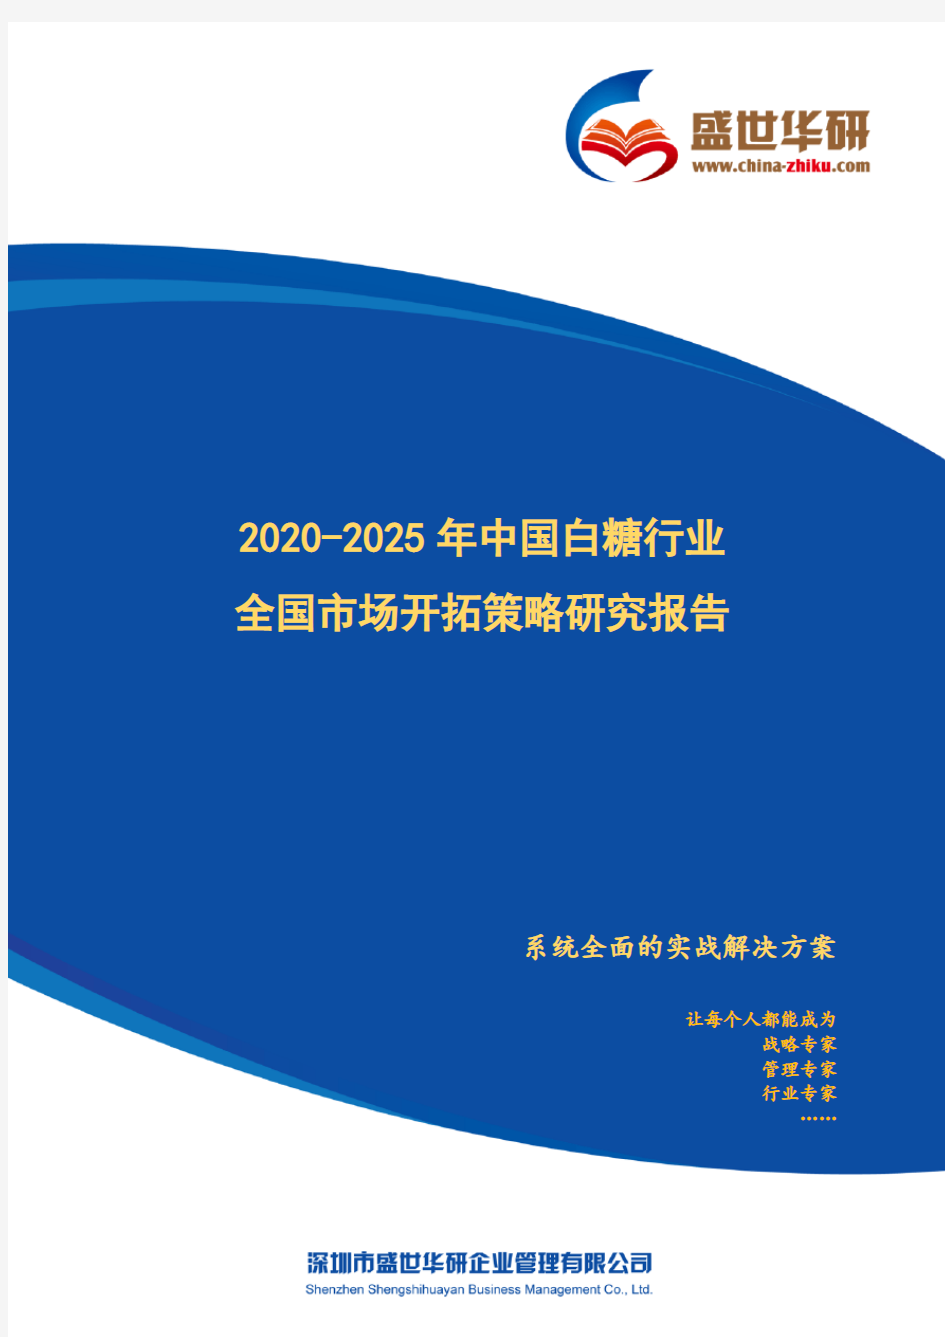 【完整版】2020-2025年中国白糖行业全国市场开拓策略研究报告